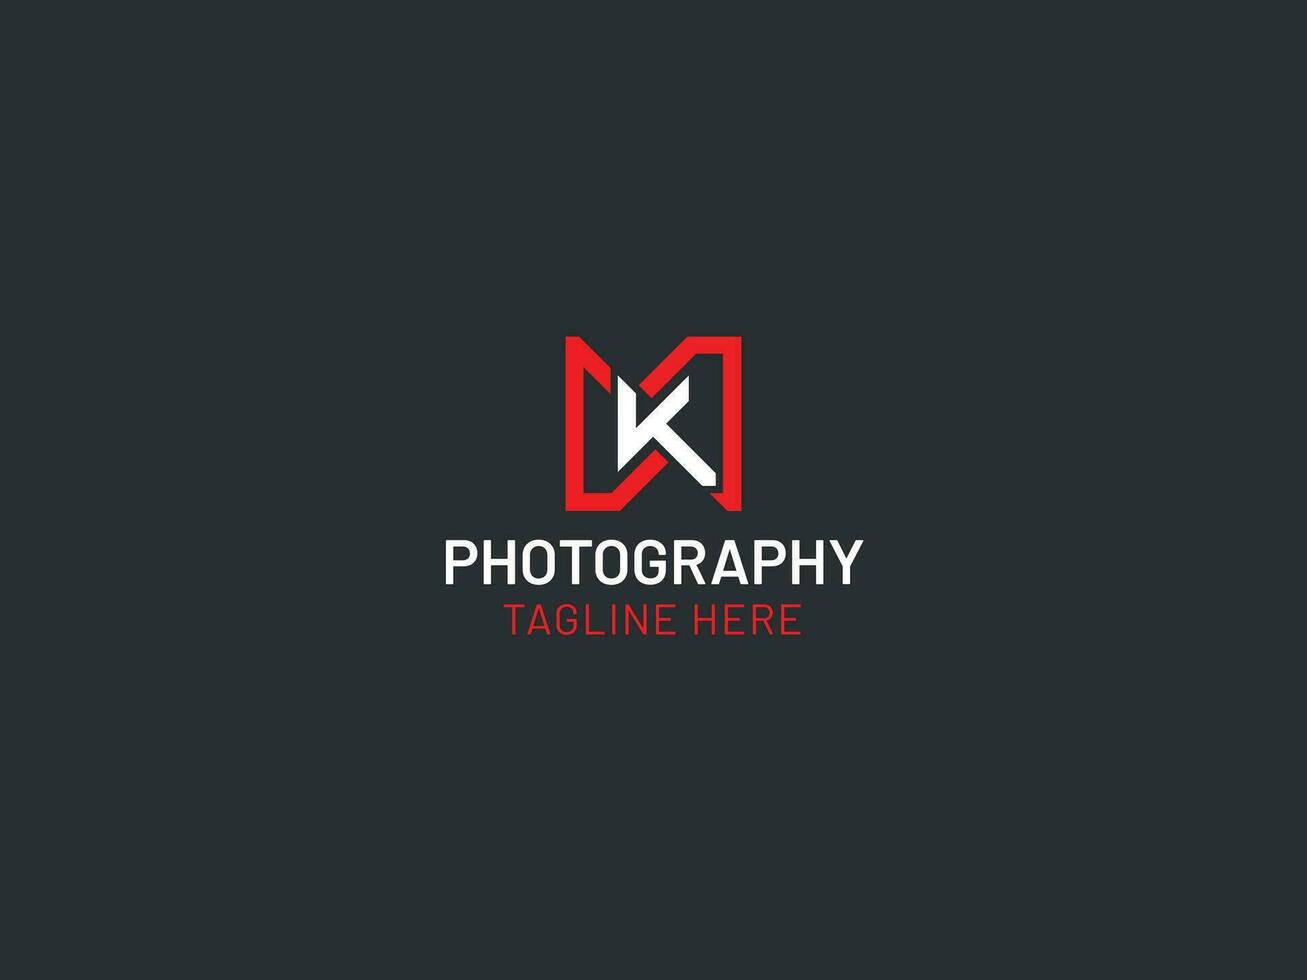 la photographie logo avec k lettre vecteur